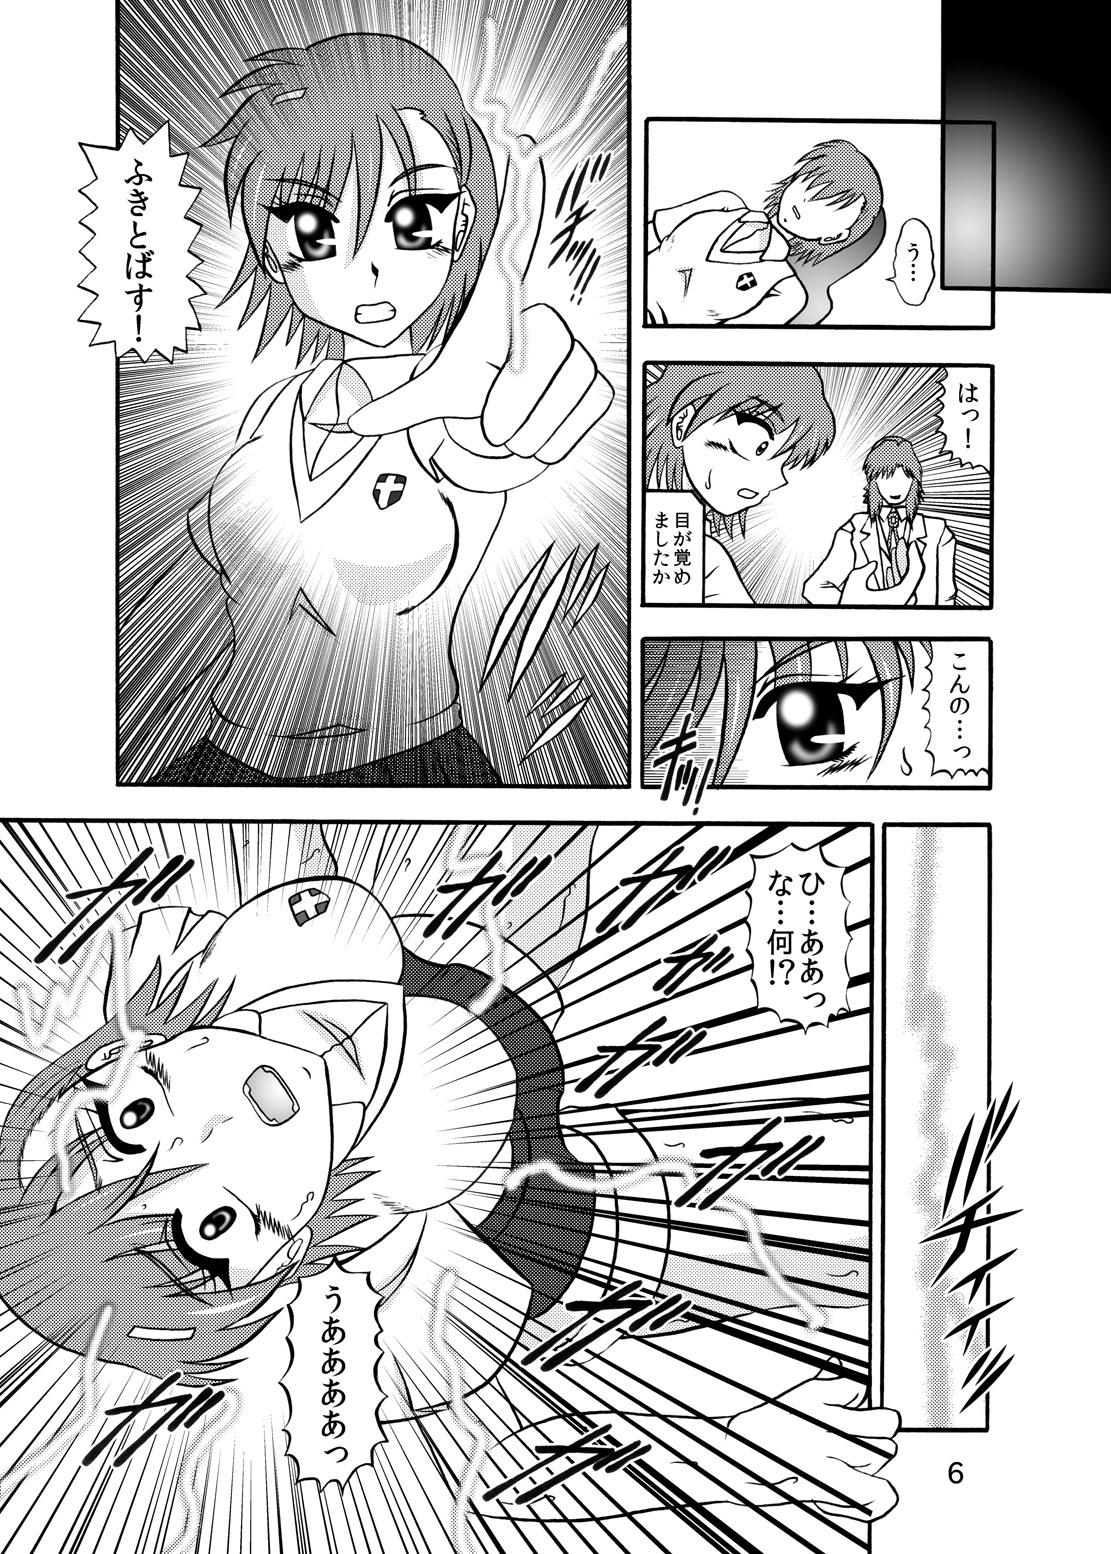 Viet Inyoku Kaizou: Misaka Mikoto - Toaru kagaku no railgun Hood - Page 4